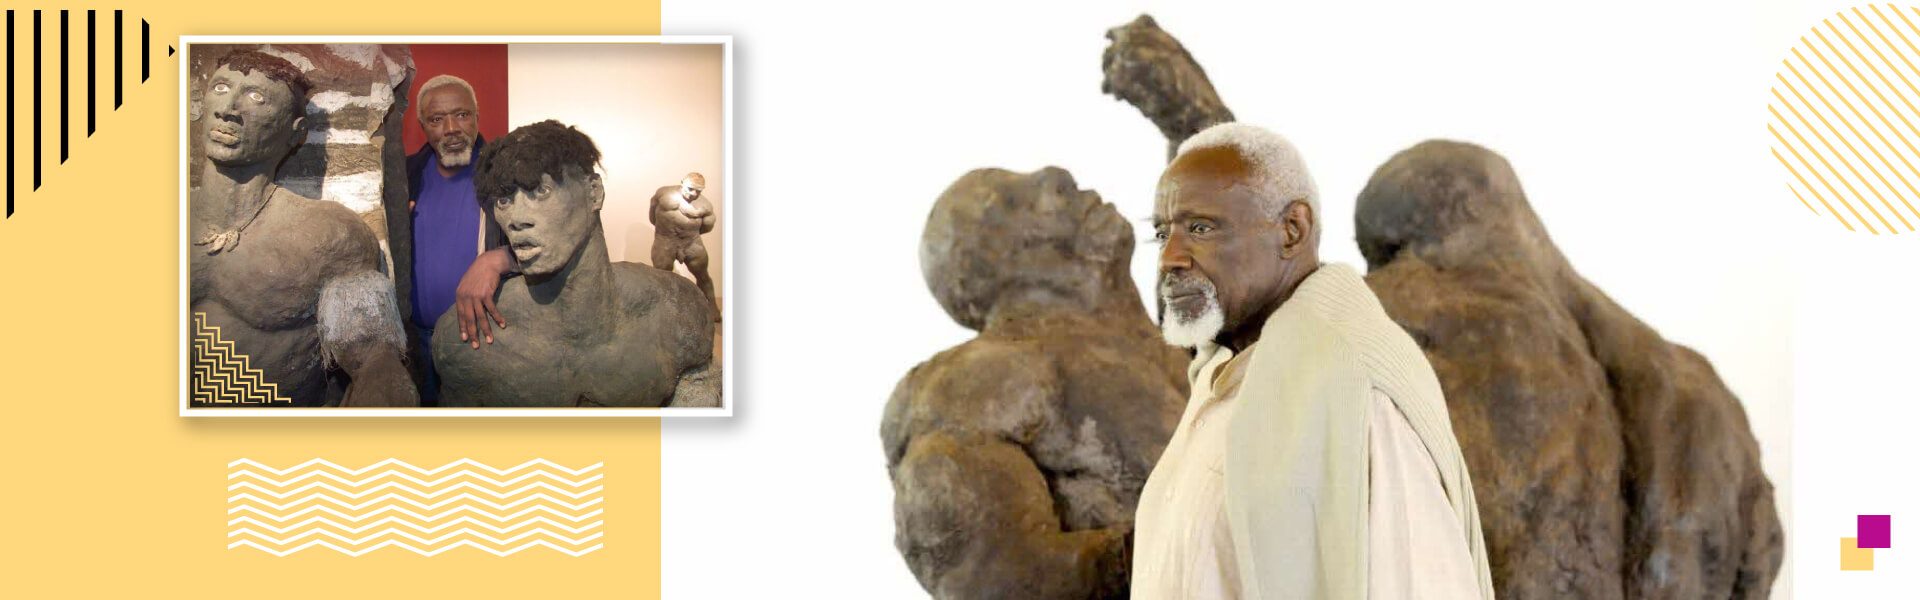  Le sculpteur sénégalais Ousmane Sow devient inoubliable 